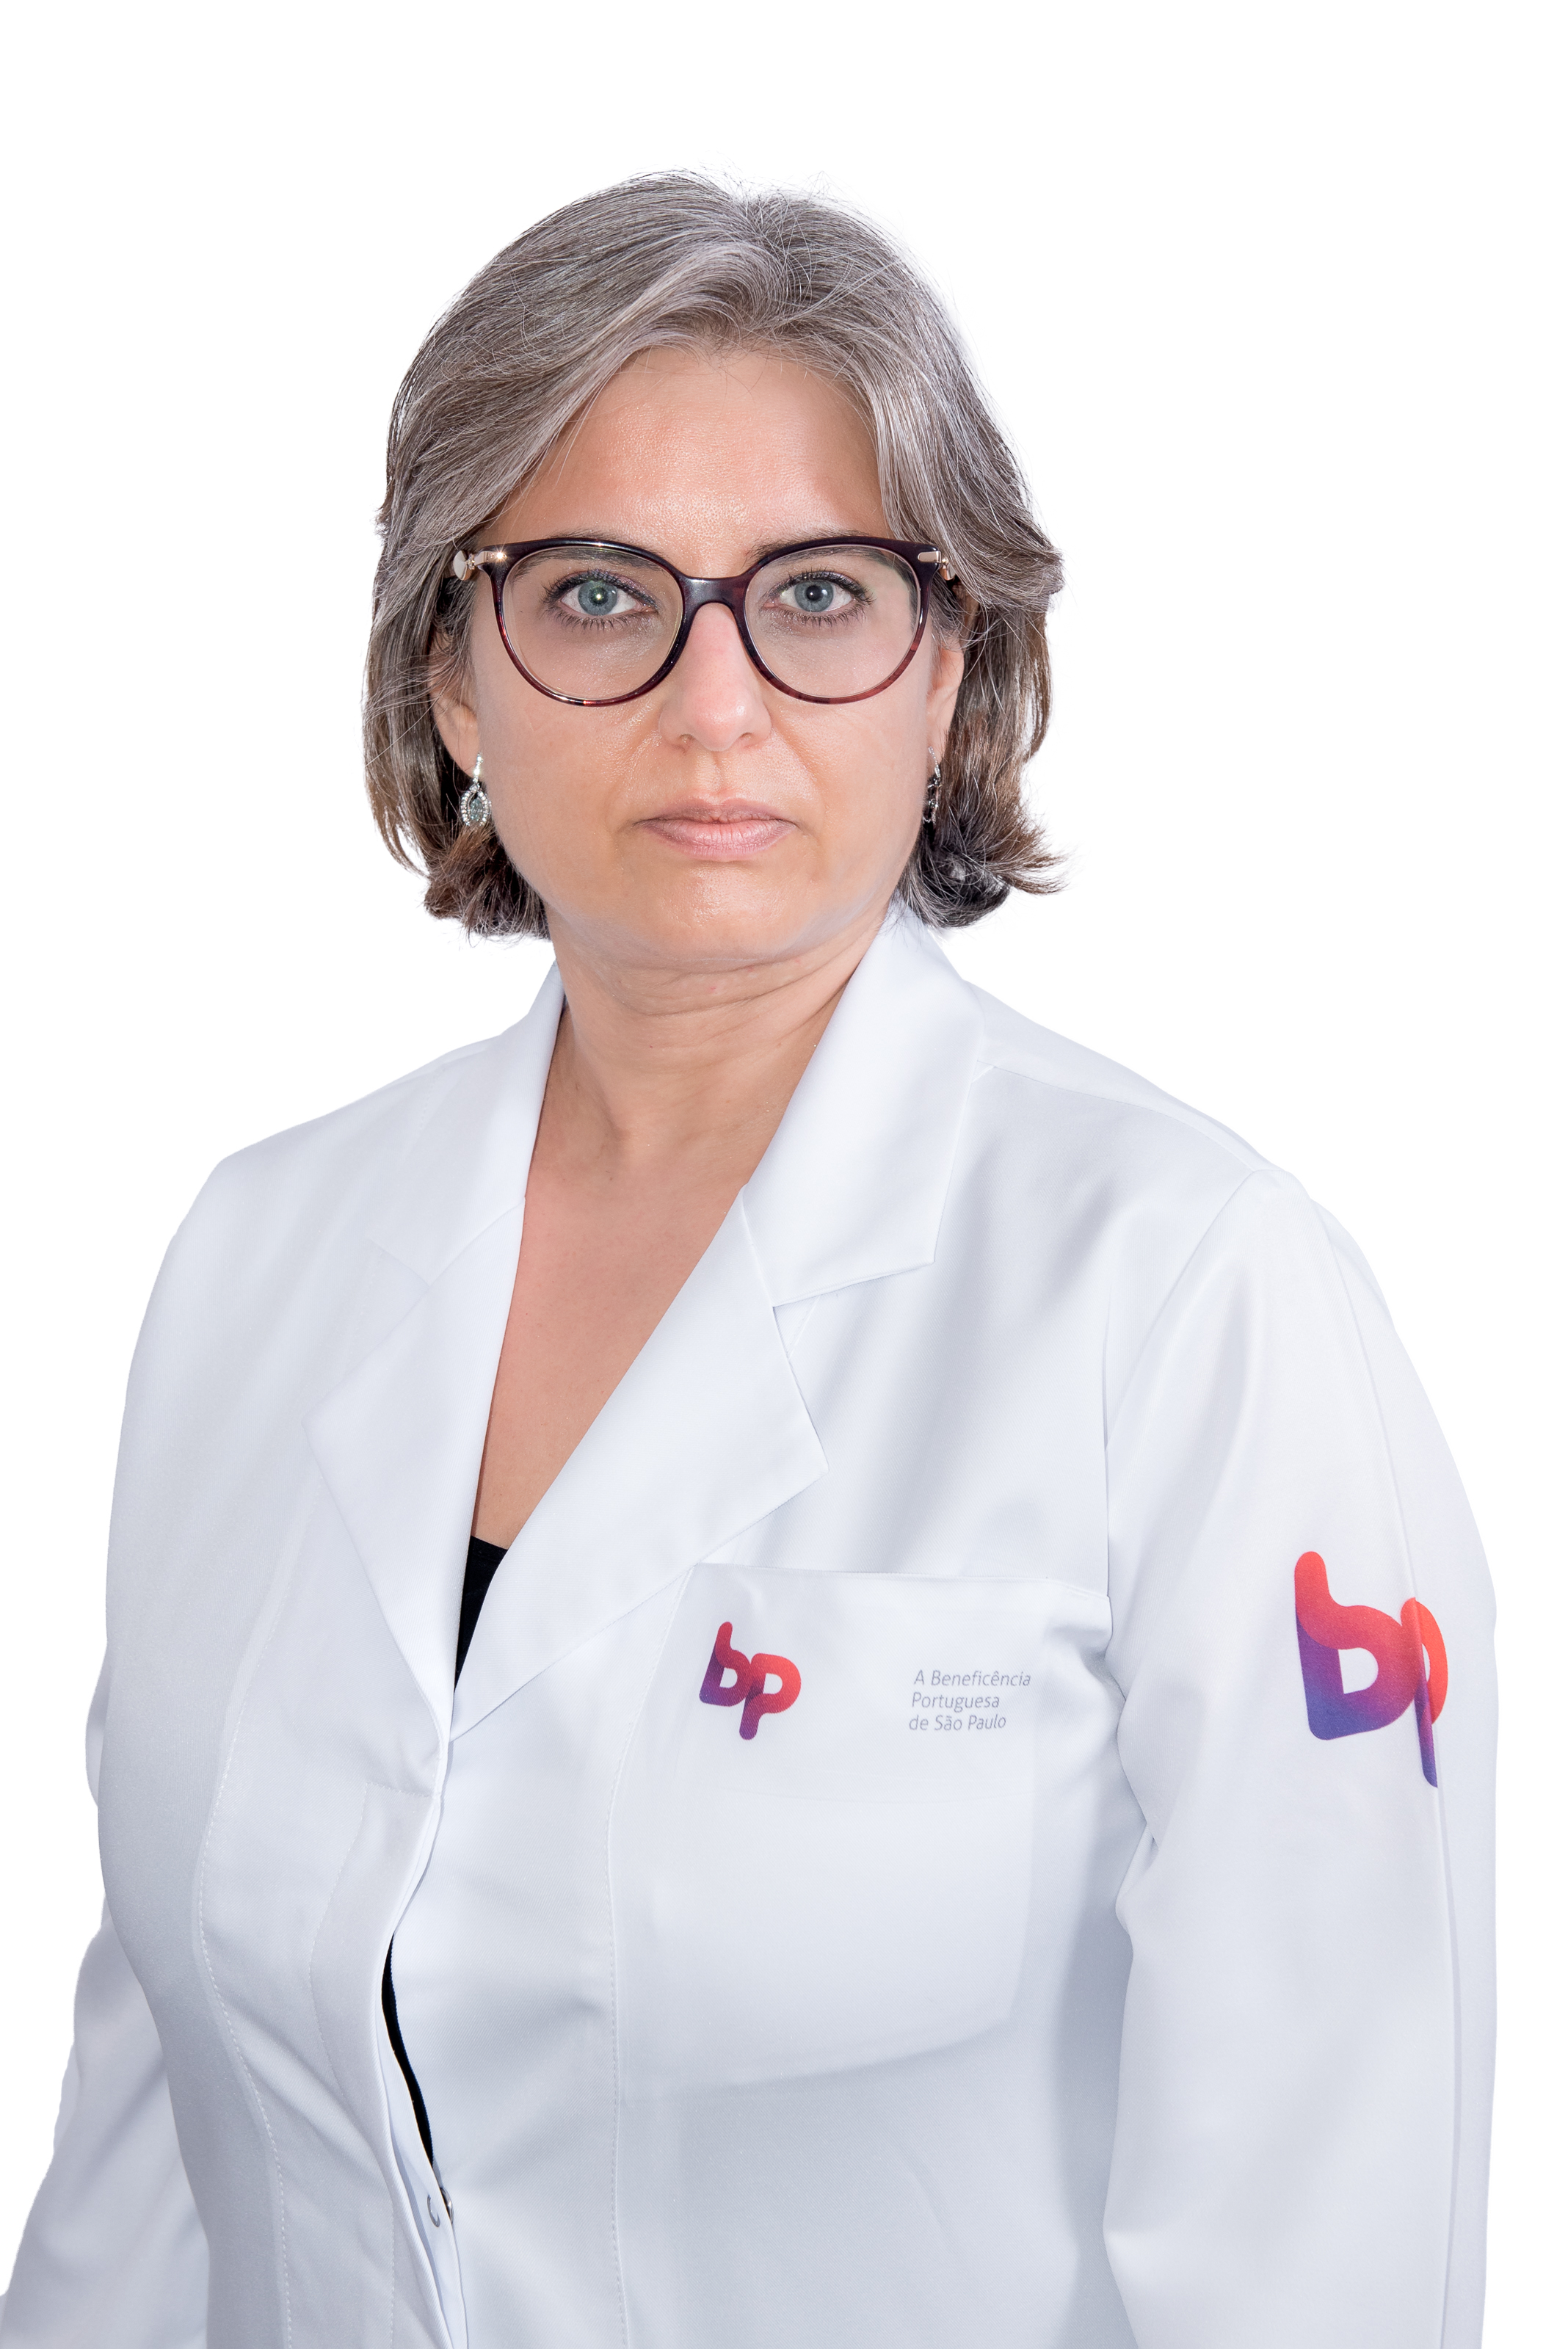 Dra. Silvia C. de A. Leão Souza